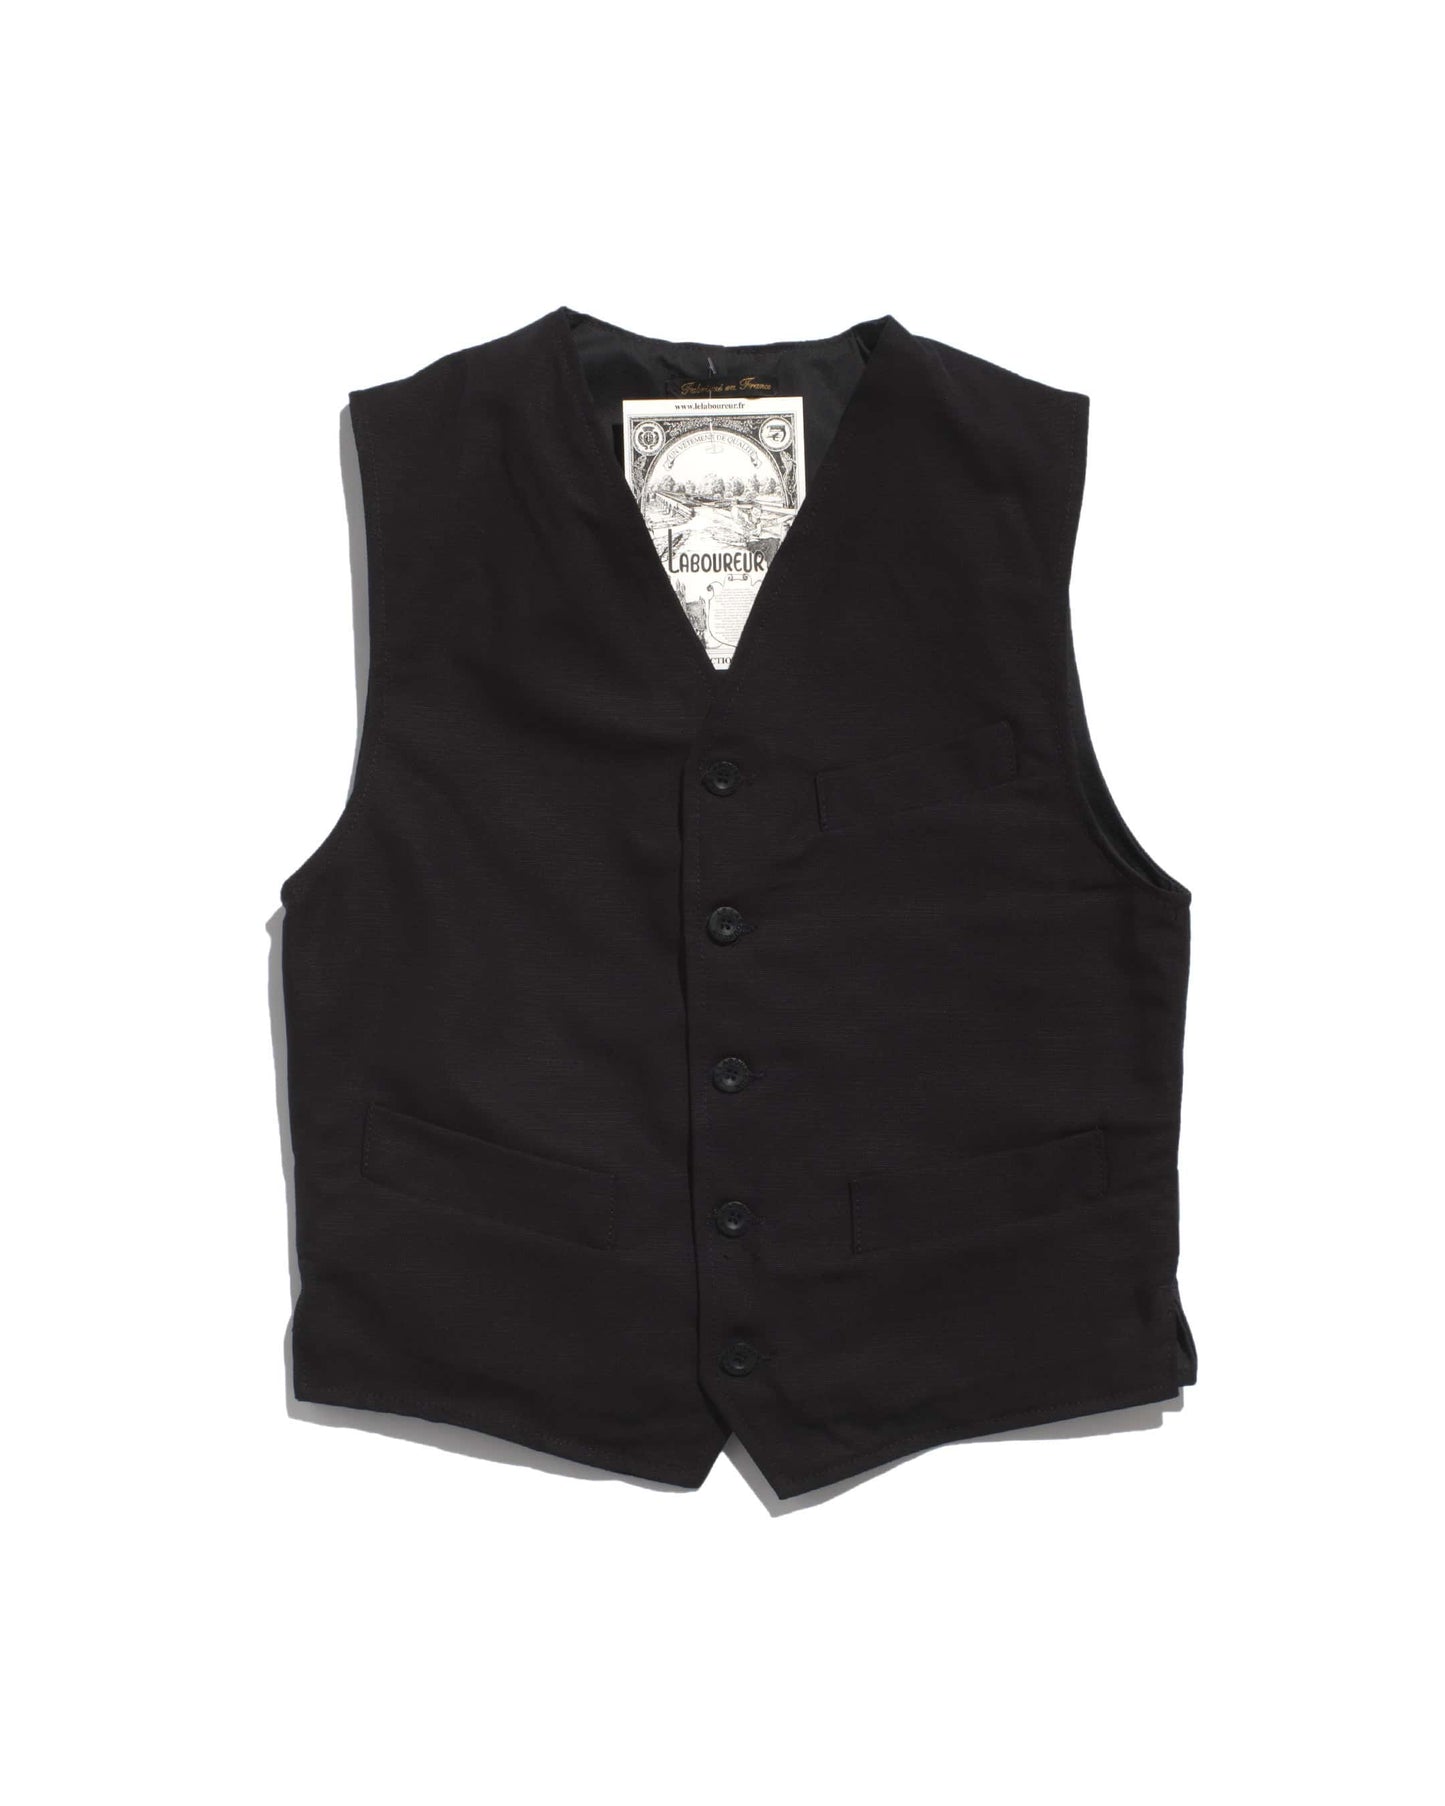 Le Laboureur vest in black linen/cotton mix